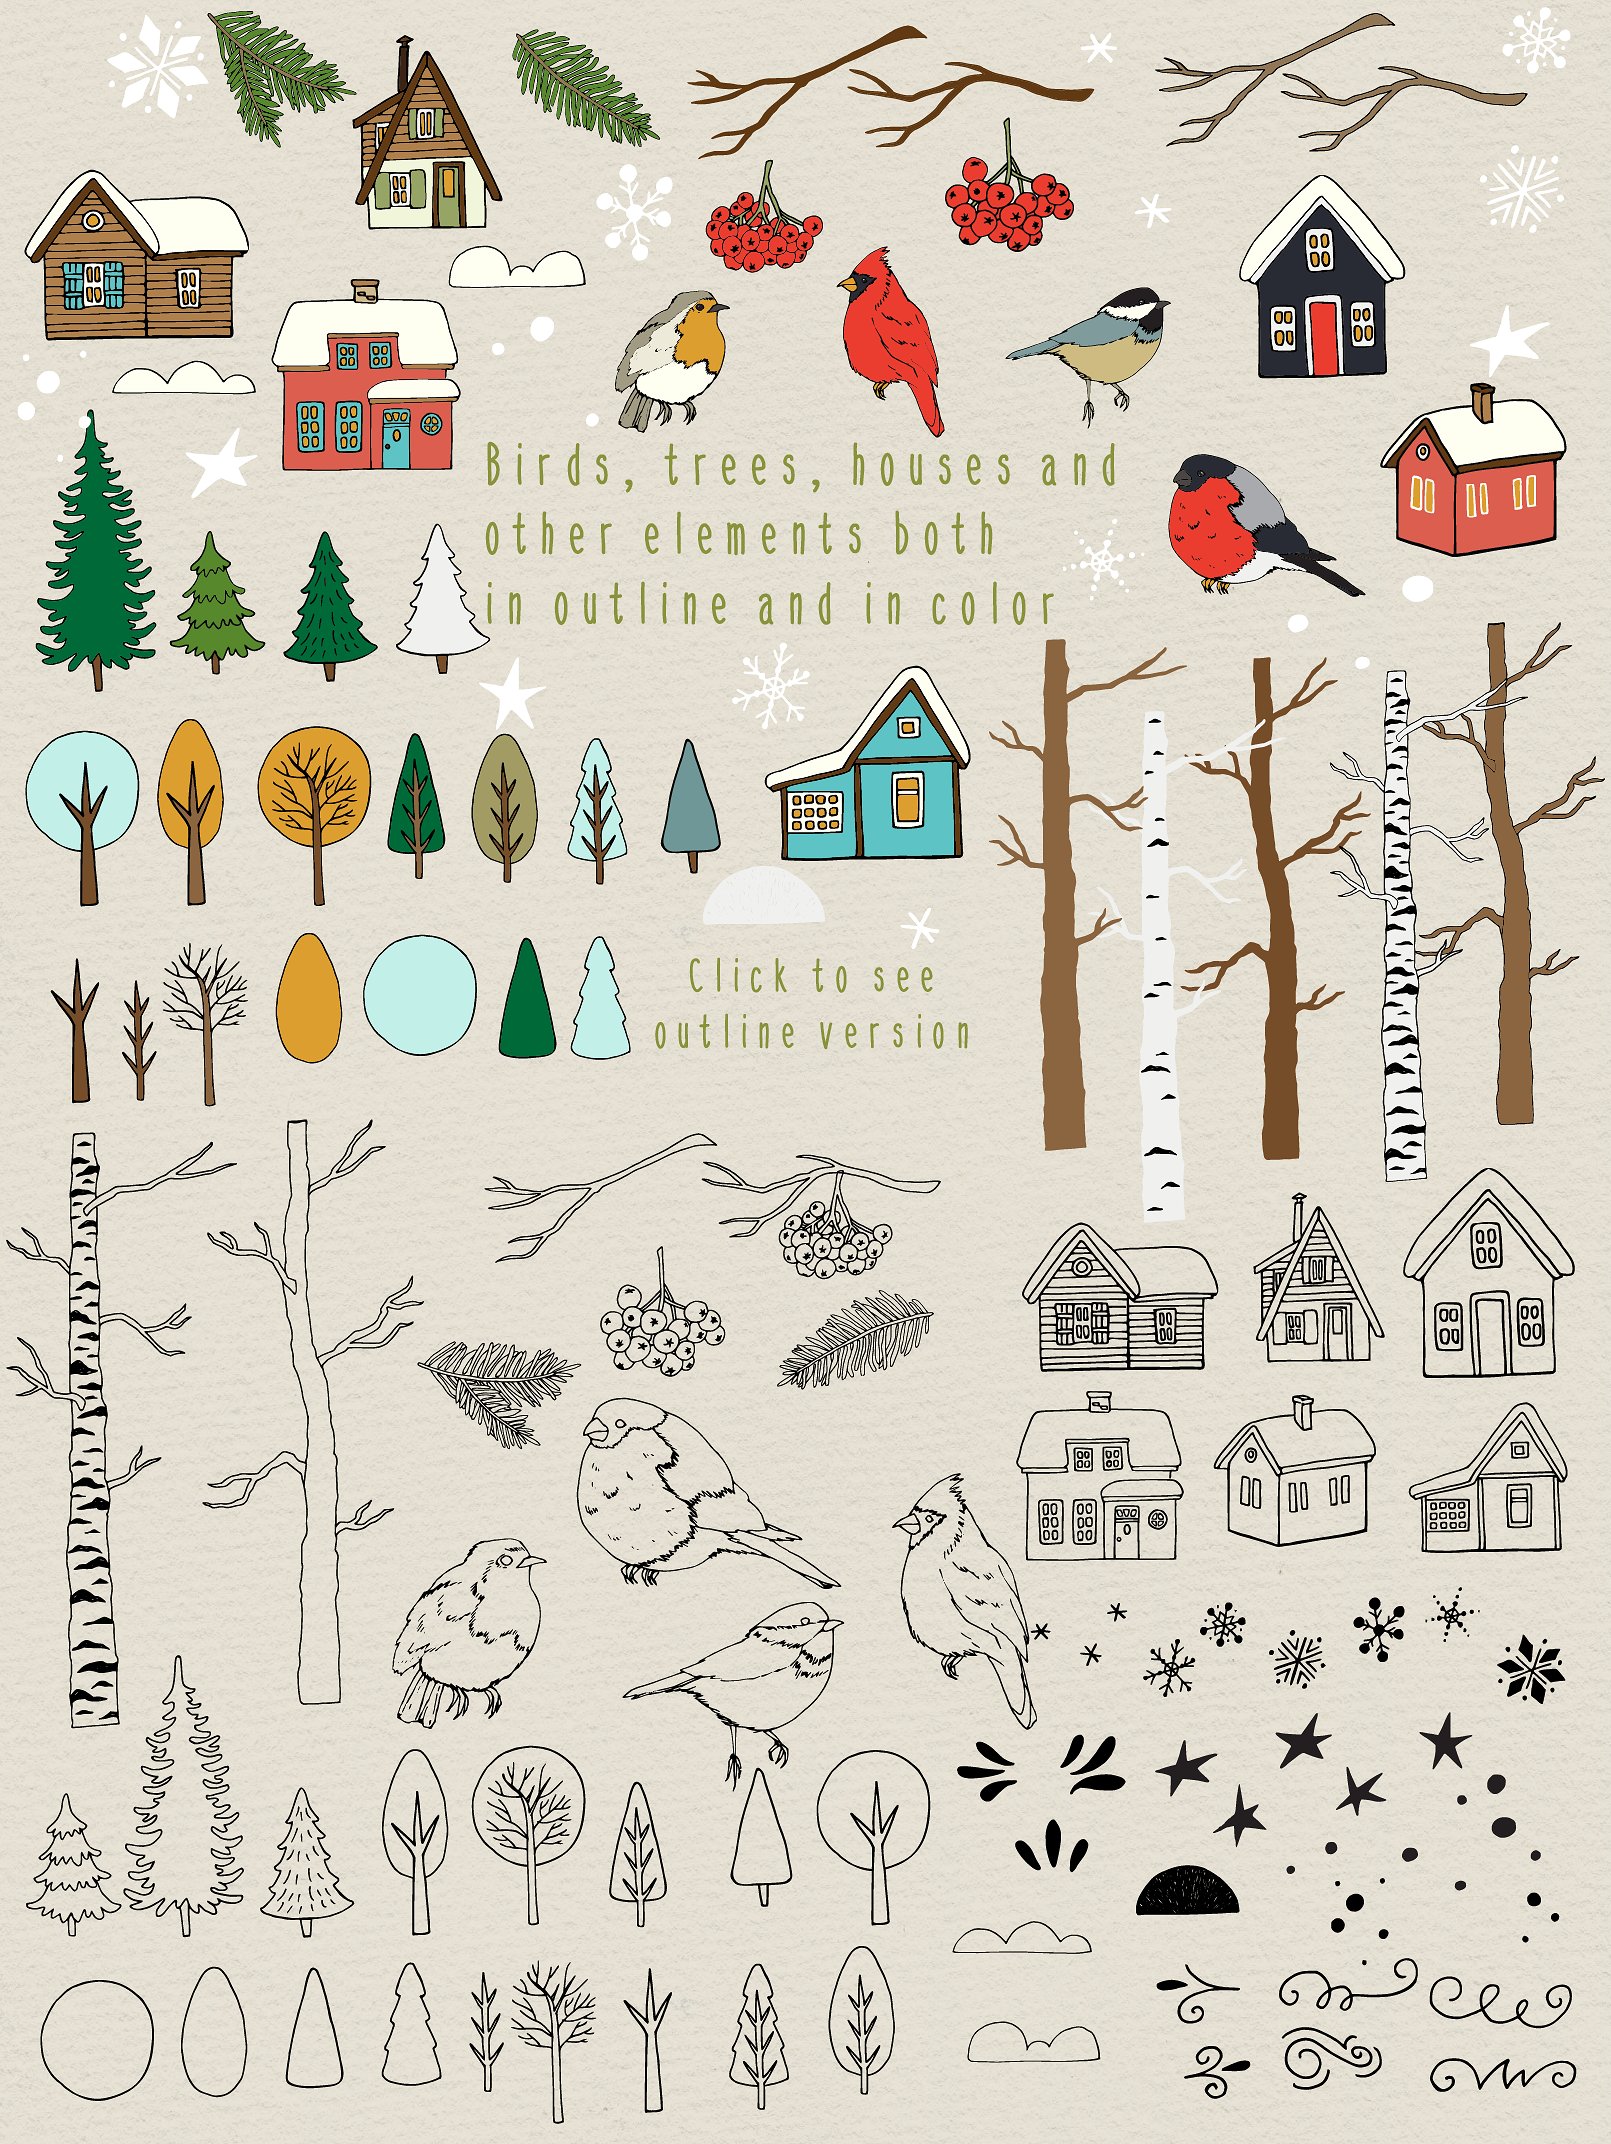 50个不同的手绘矢量剪贴画元素圣诞森林集合插图(4)